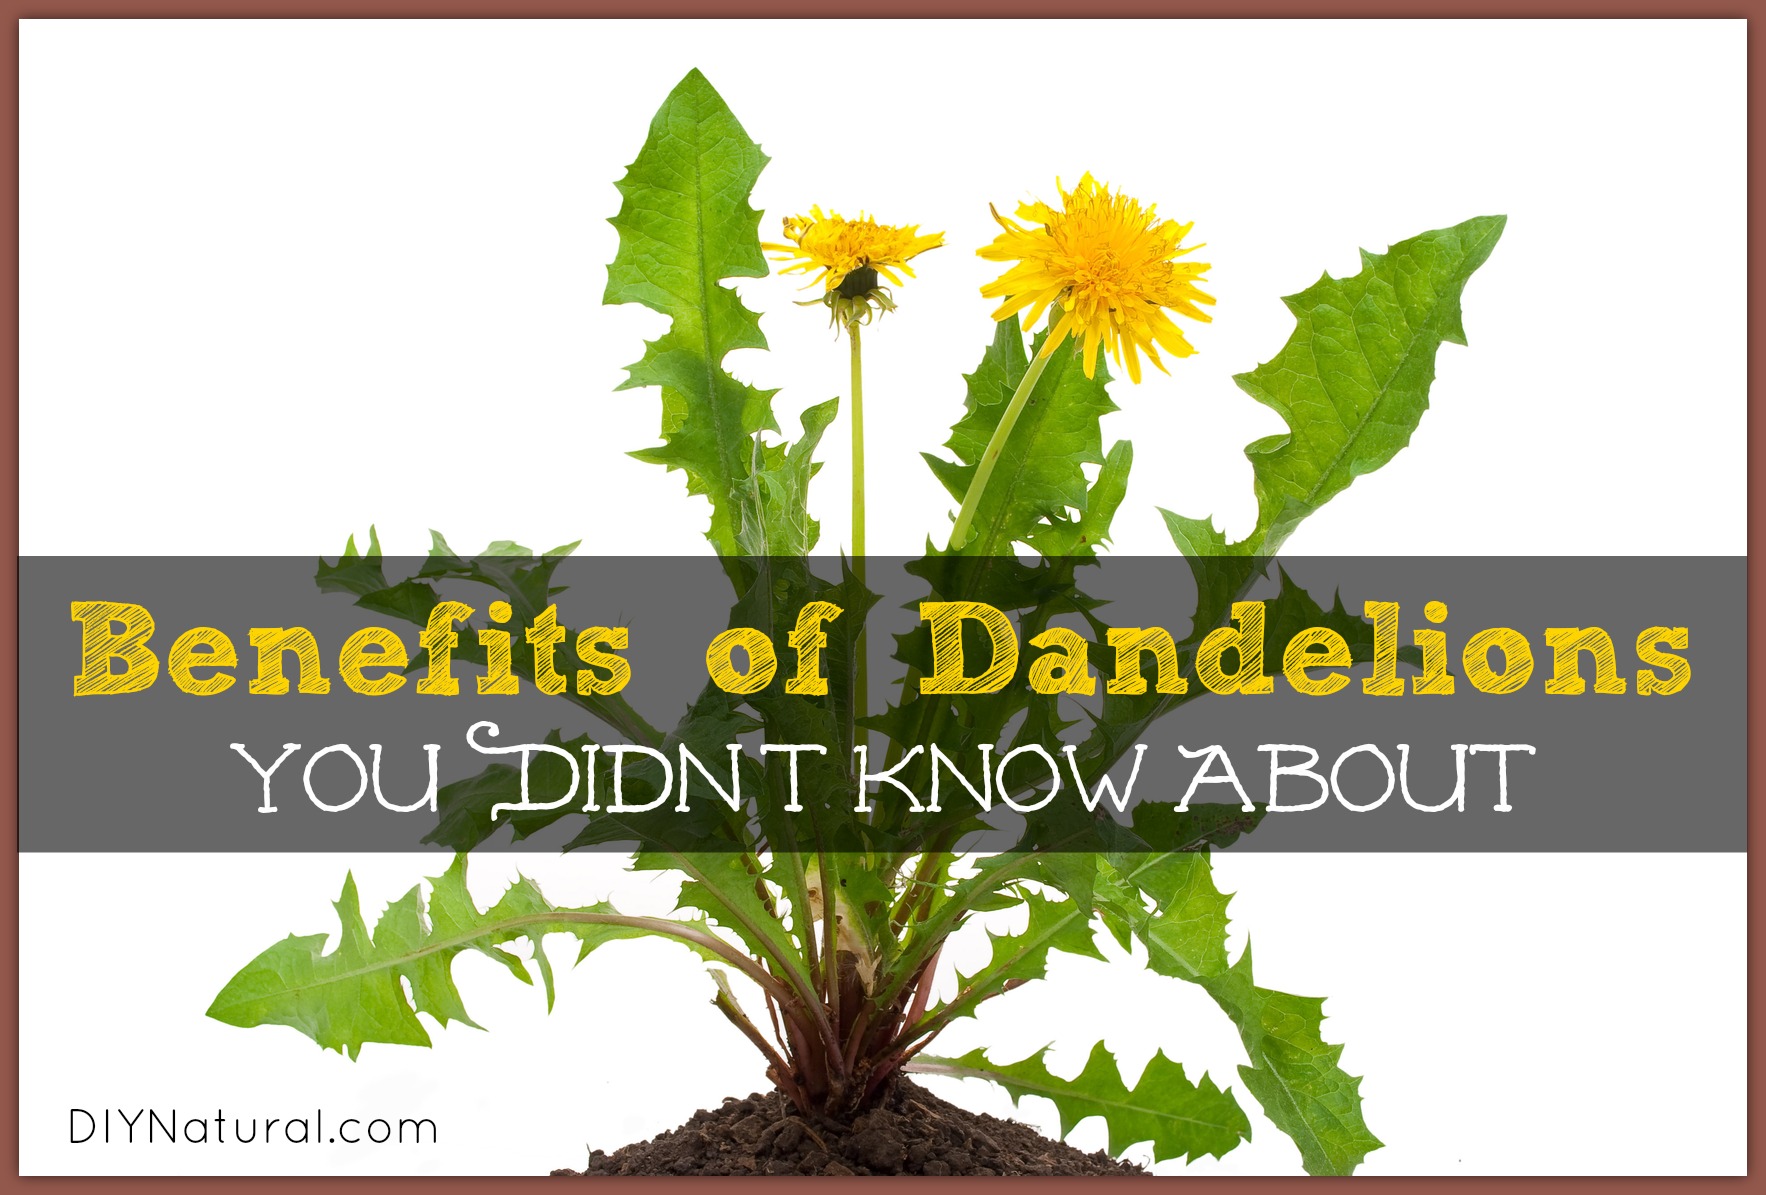 Dandelion Benefits - Greens, Roots, and Dandelion Tea